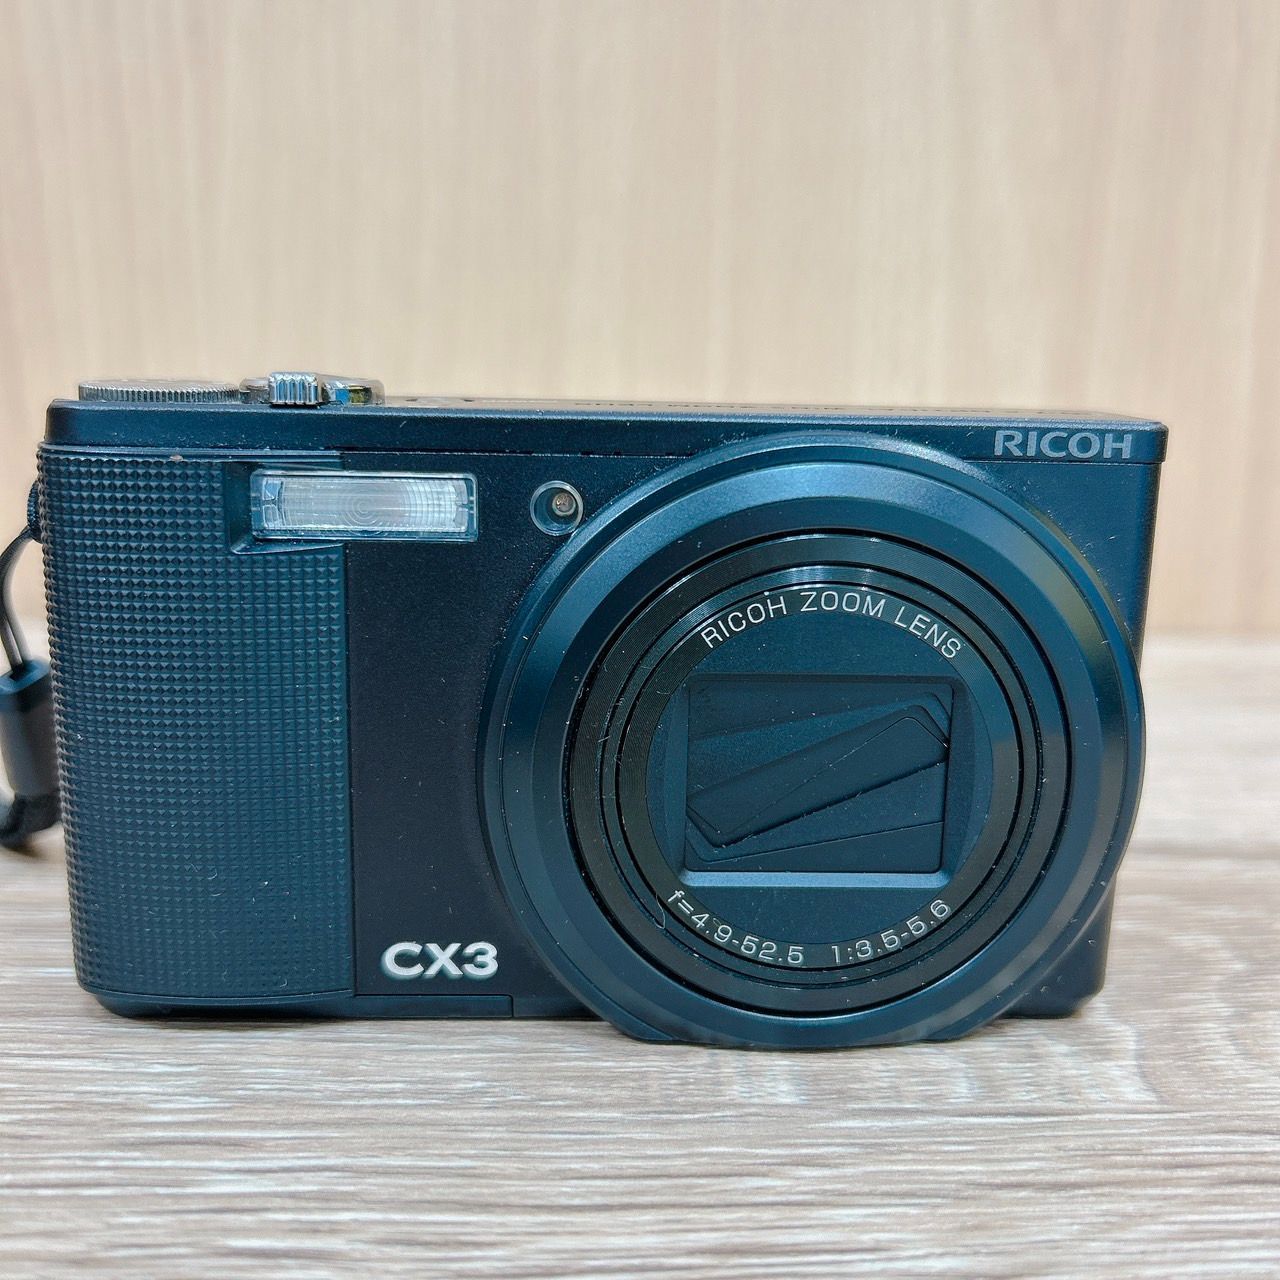 RICOH リコー CX3 デジカメ ブラック - デジタルカメラ